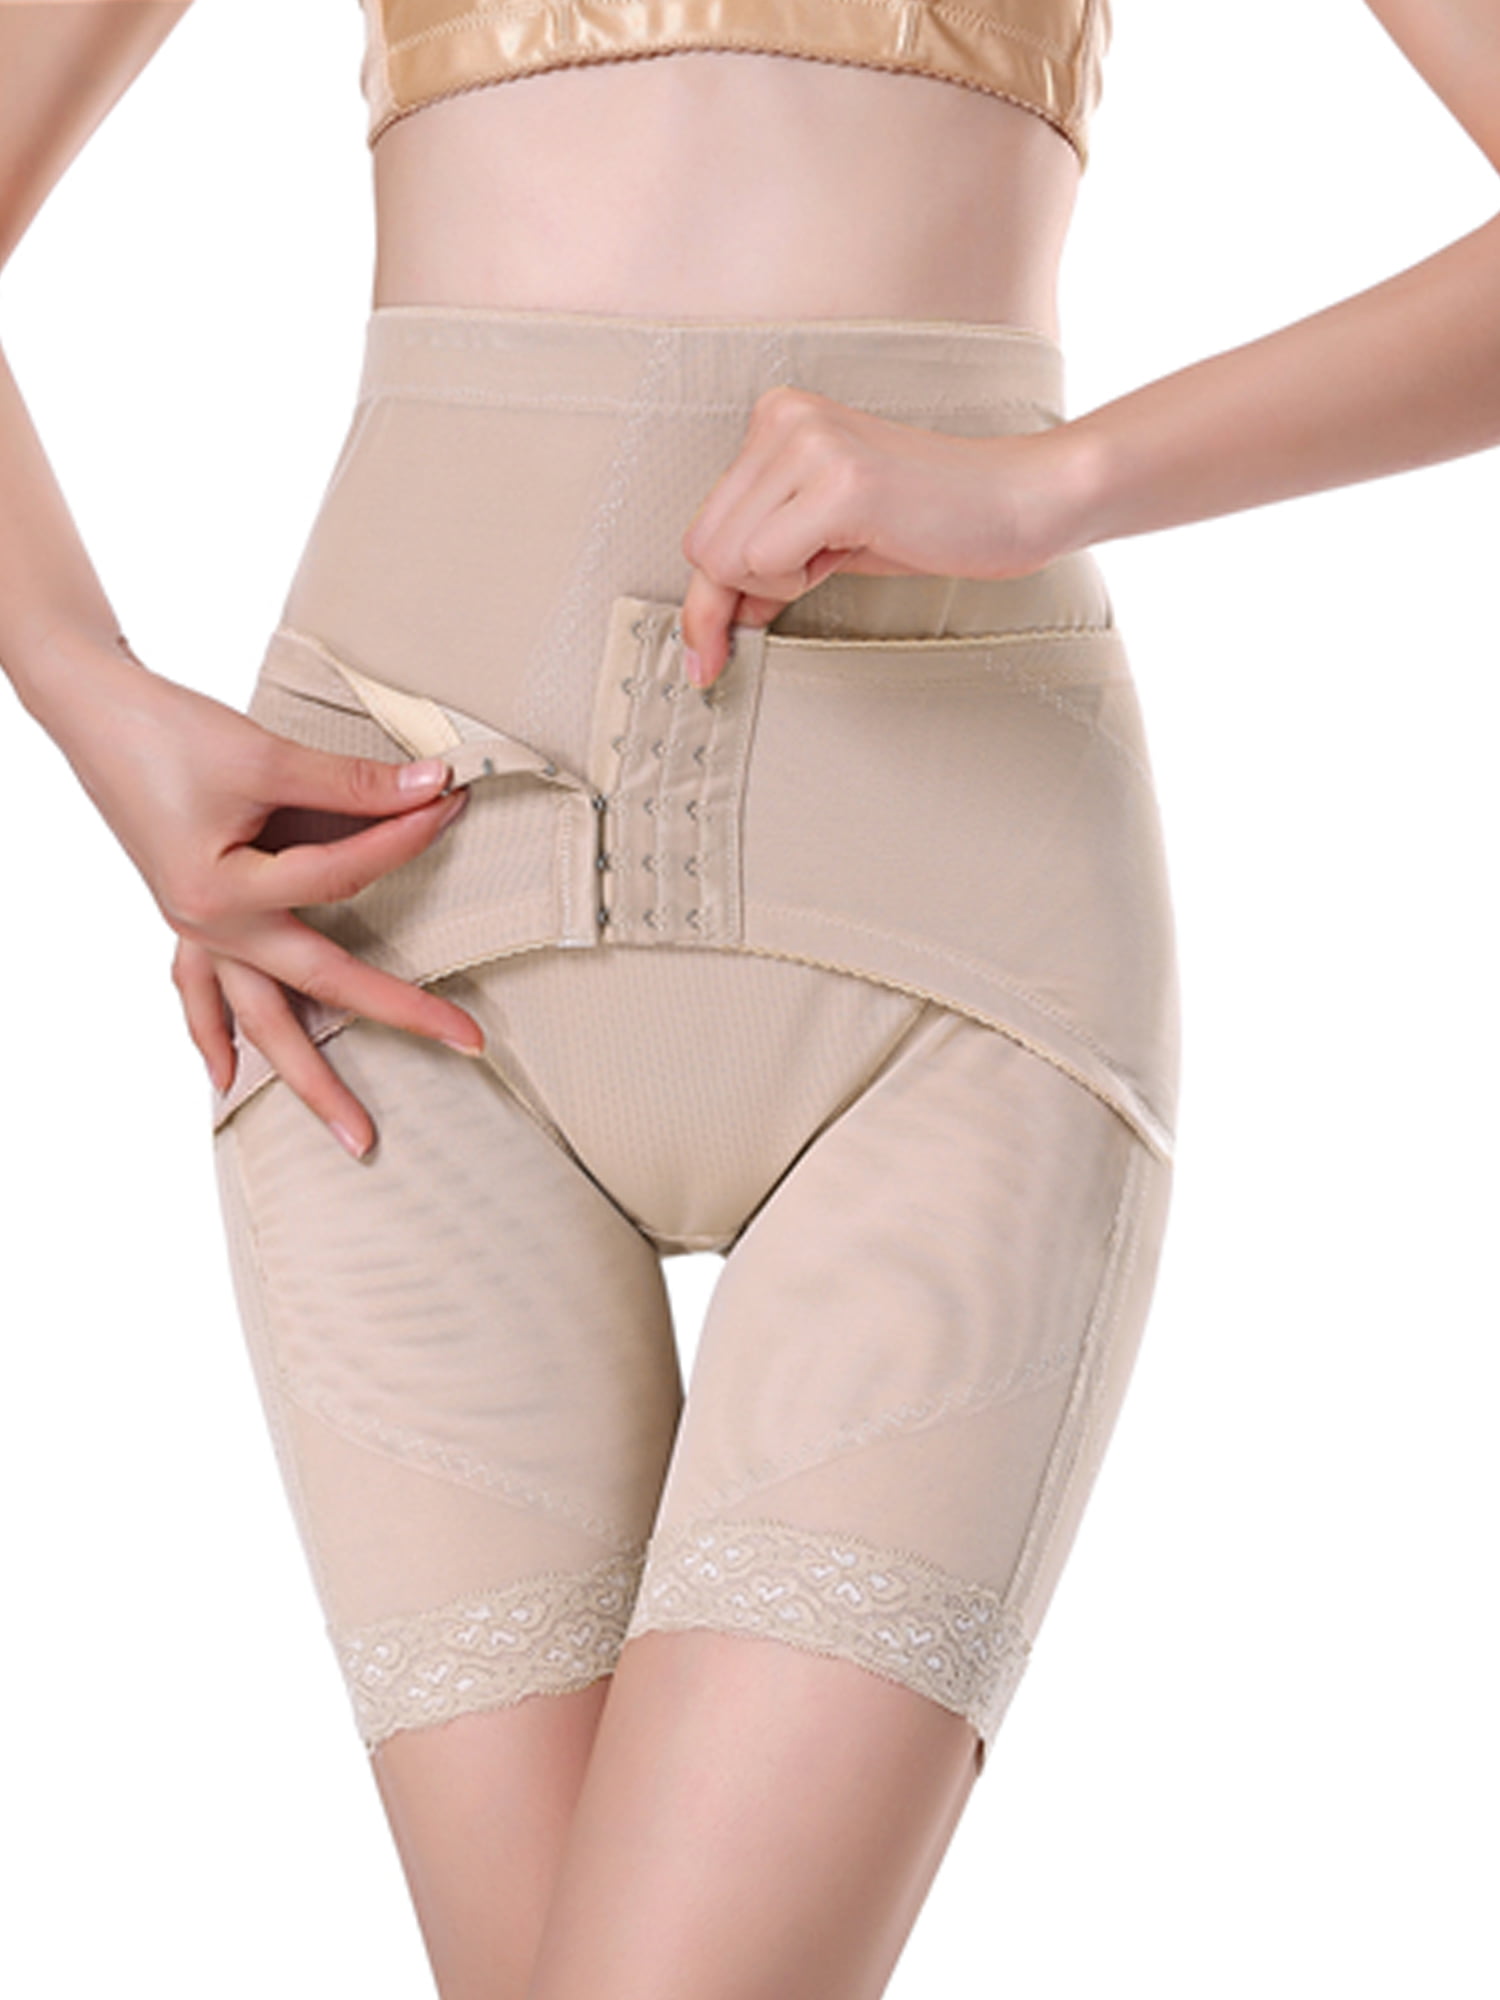 DODOING Tummy Control Shapewear for Women High Waist Cincher Thigh Slimmer Body Shaper 